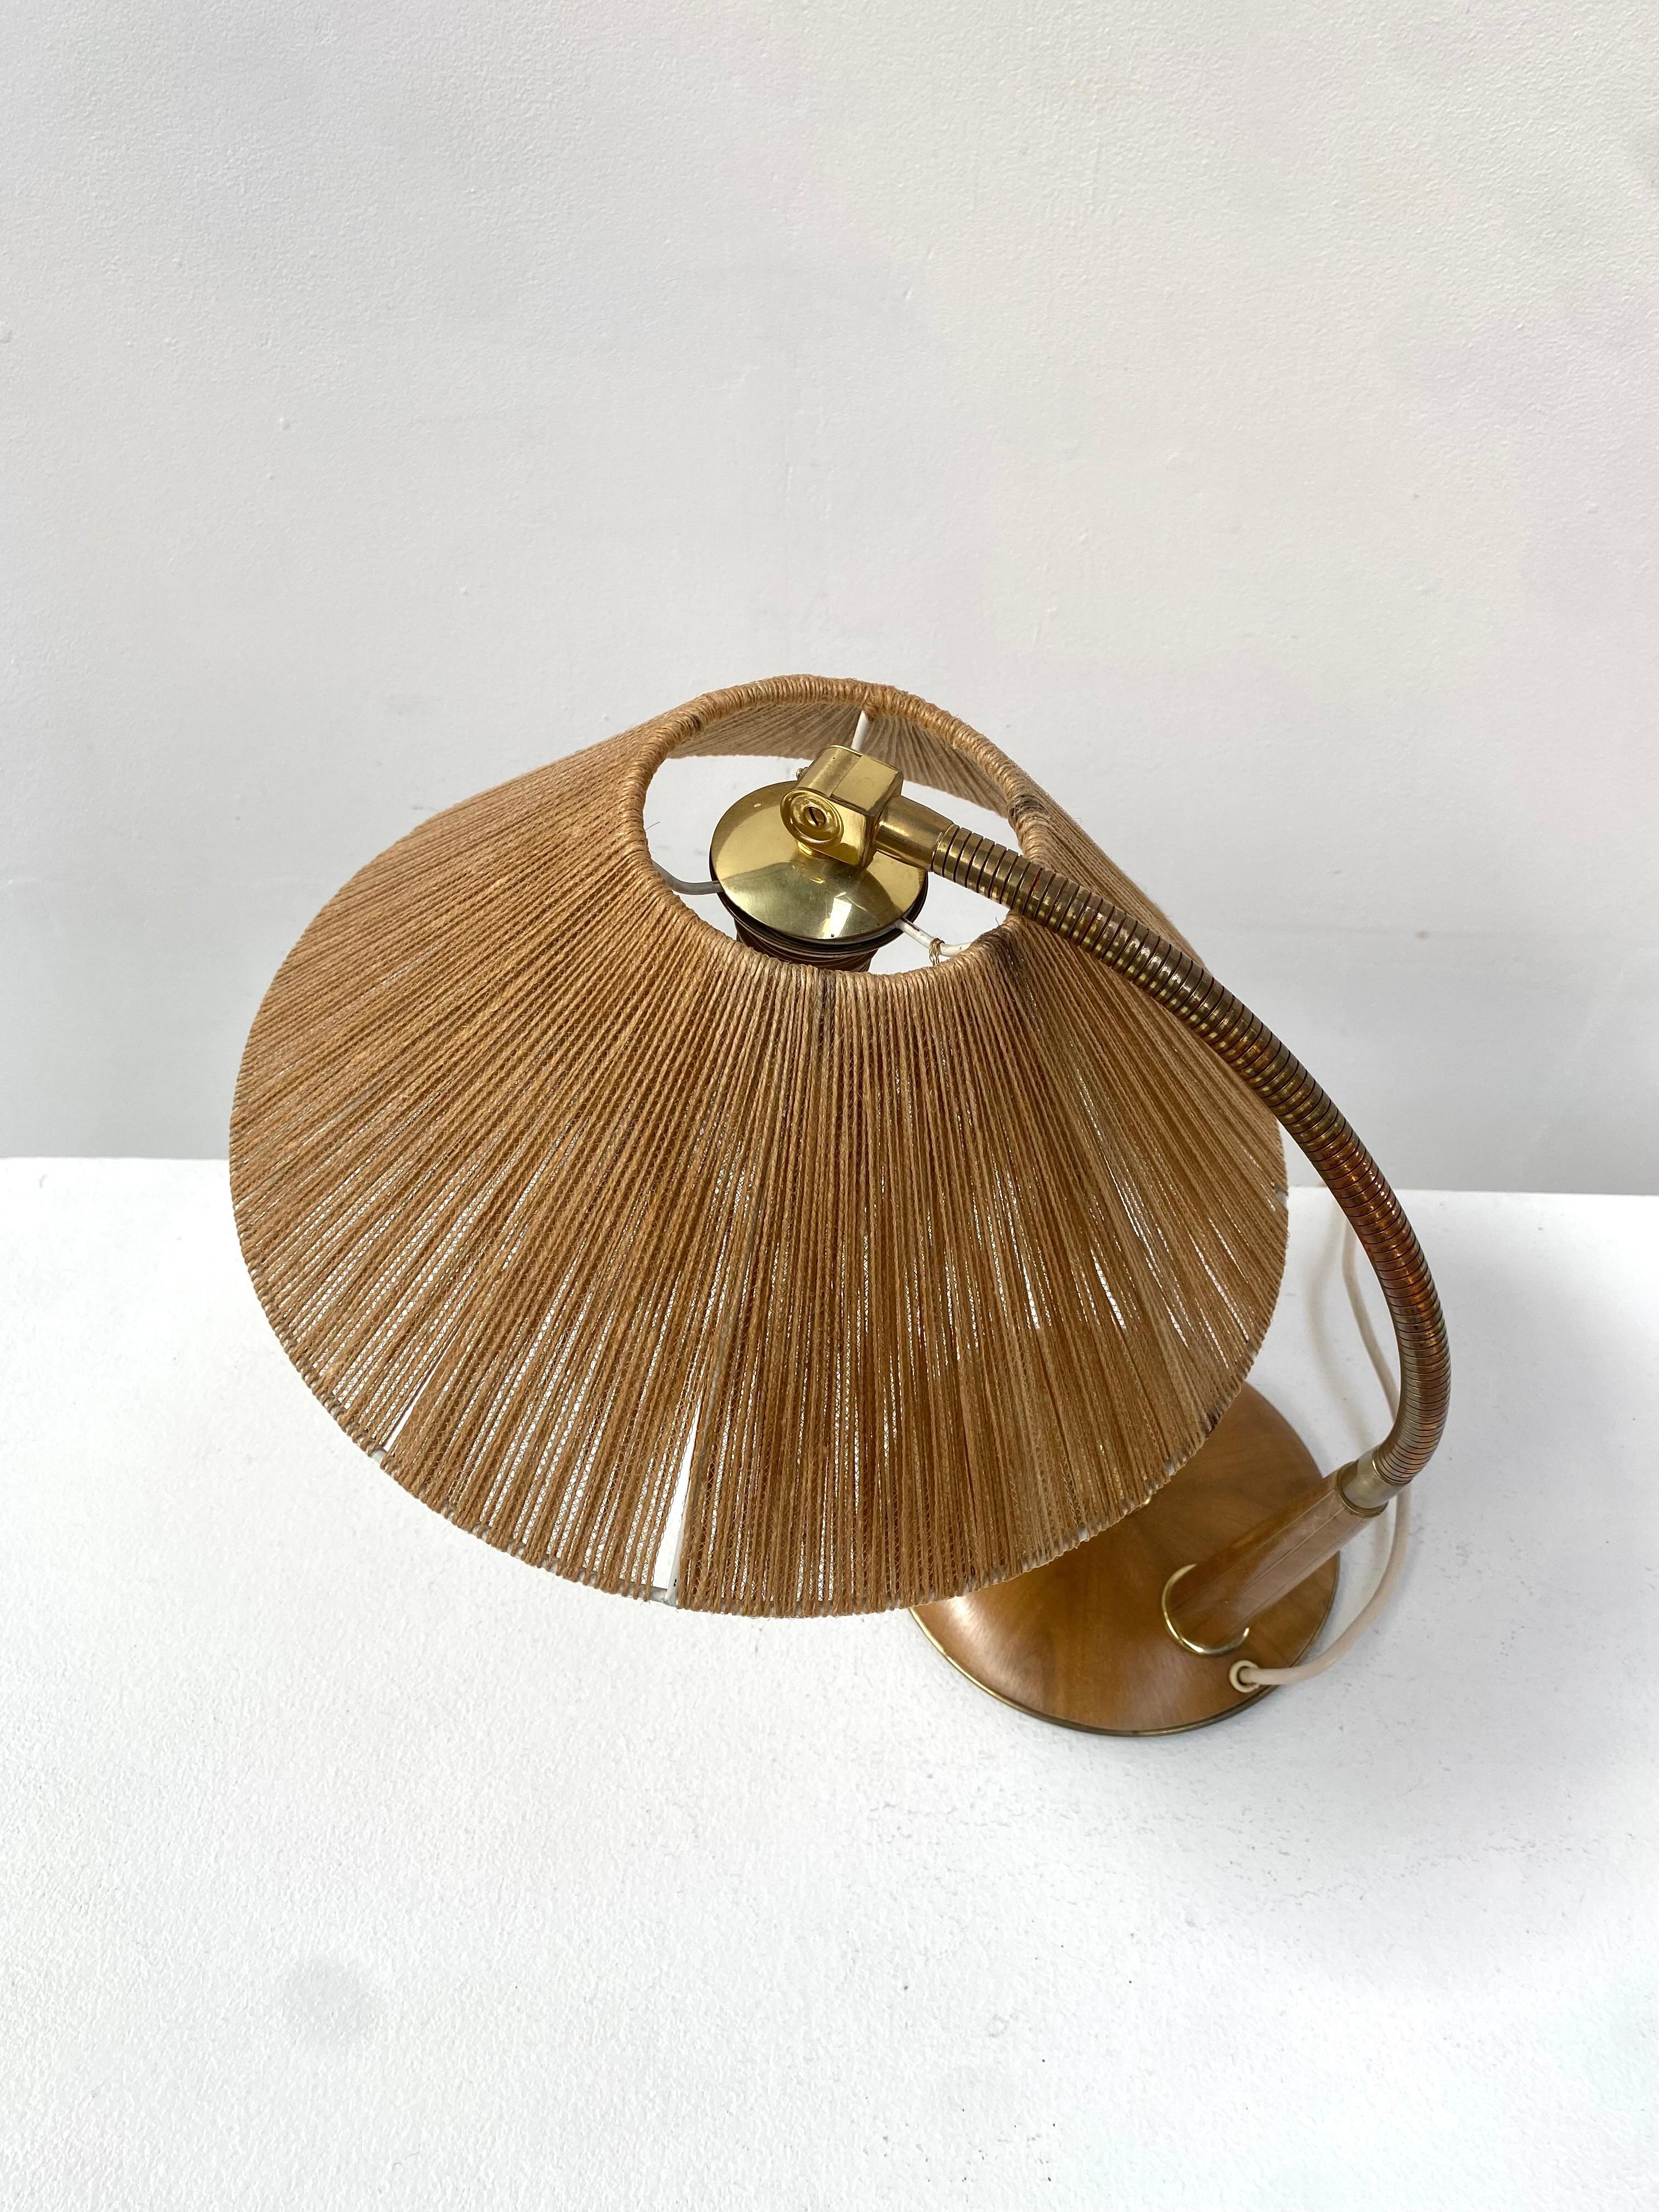 Swiss Teak Table Lamp,  Mod. 2655,  by Frits Muller for Temde Leuchten, 1970s. For Sale 3